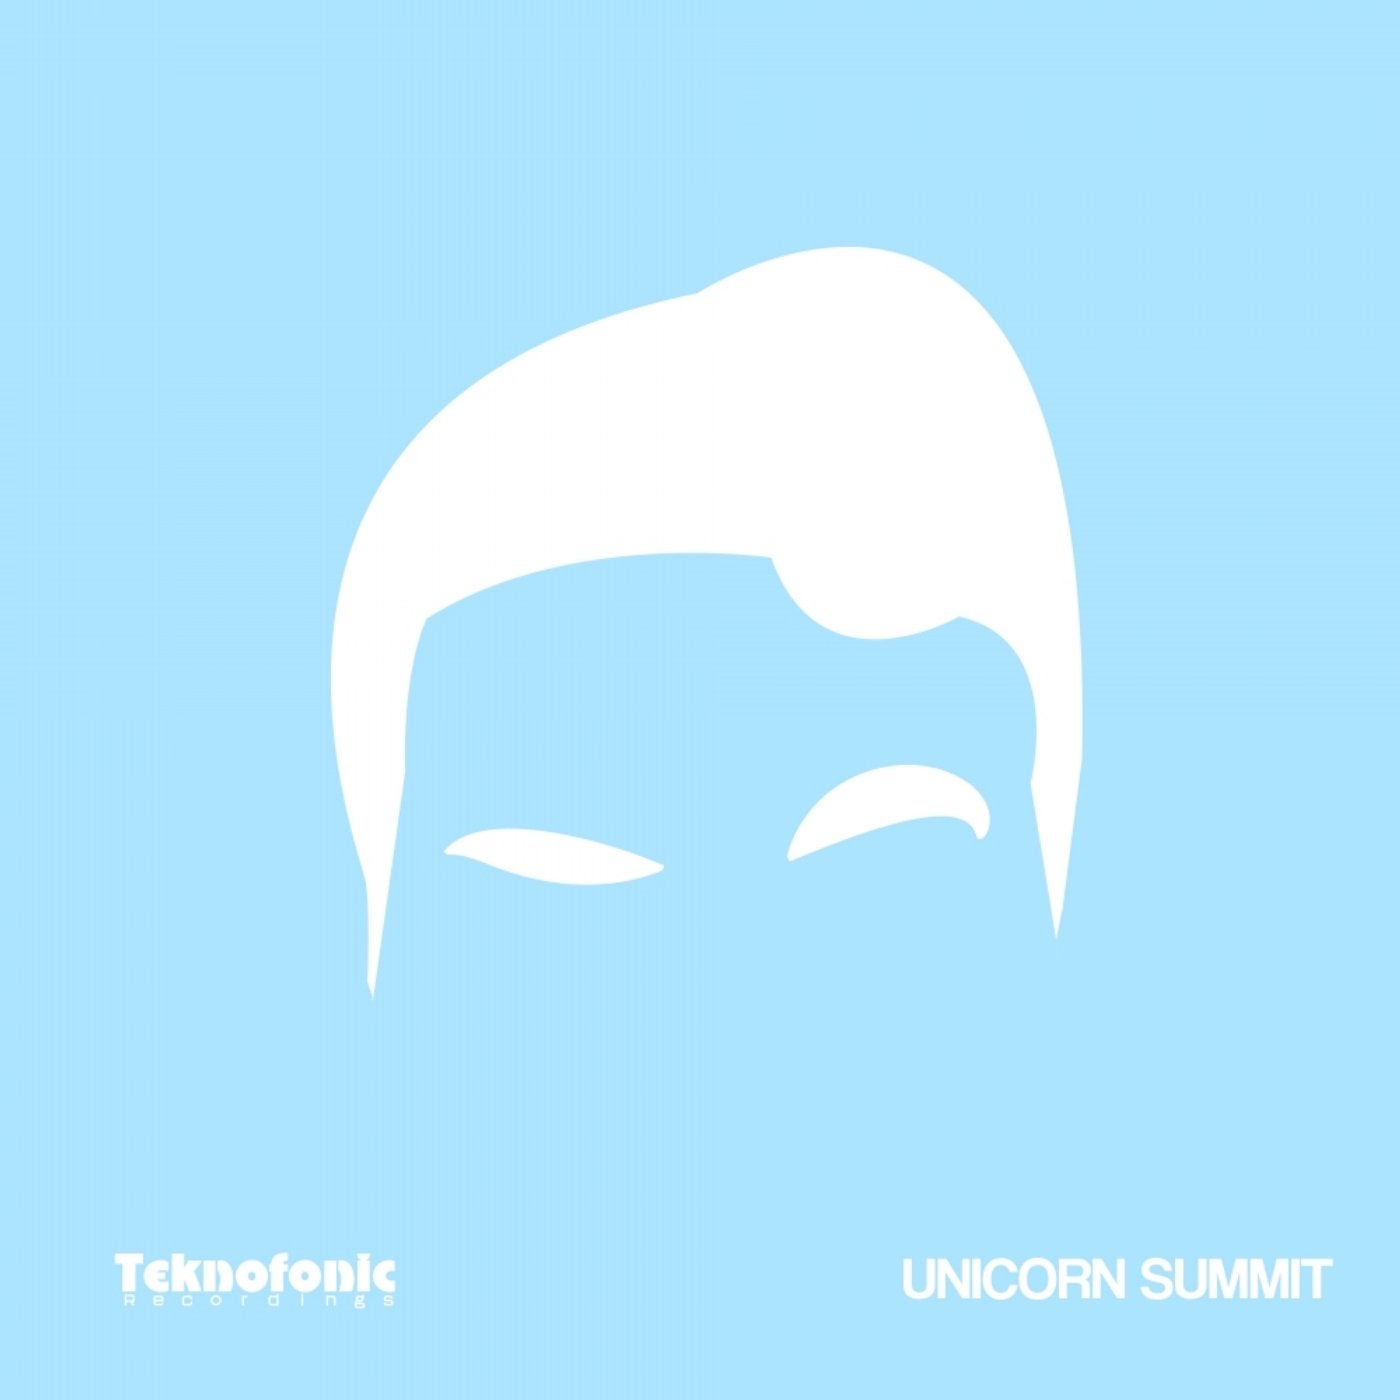 Unicorn Summit